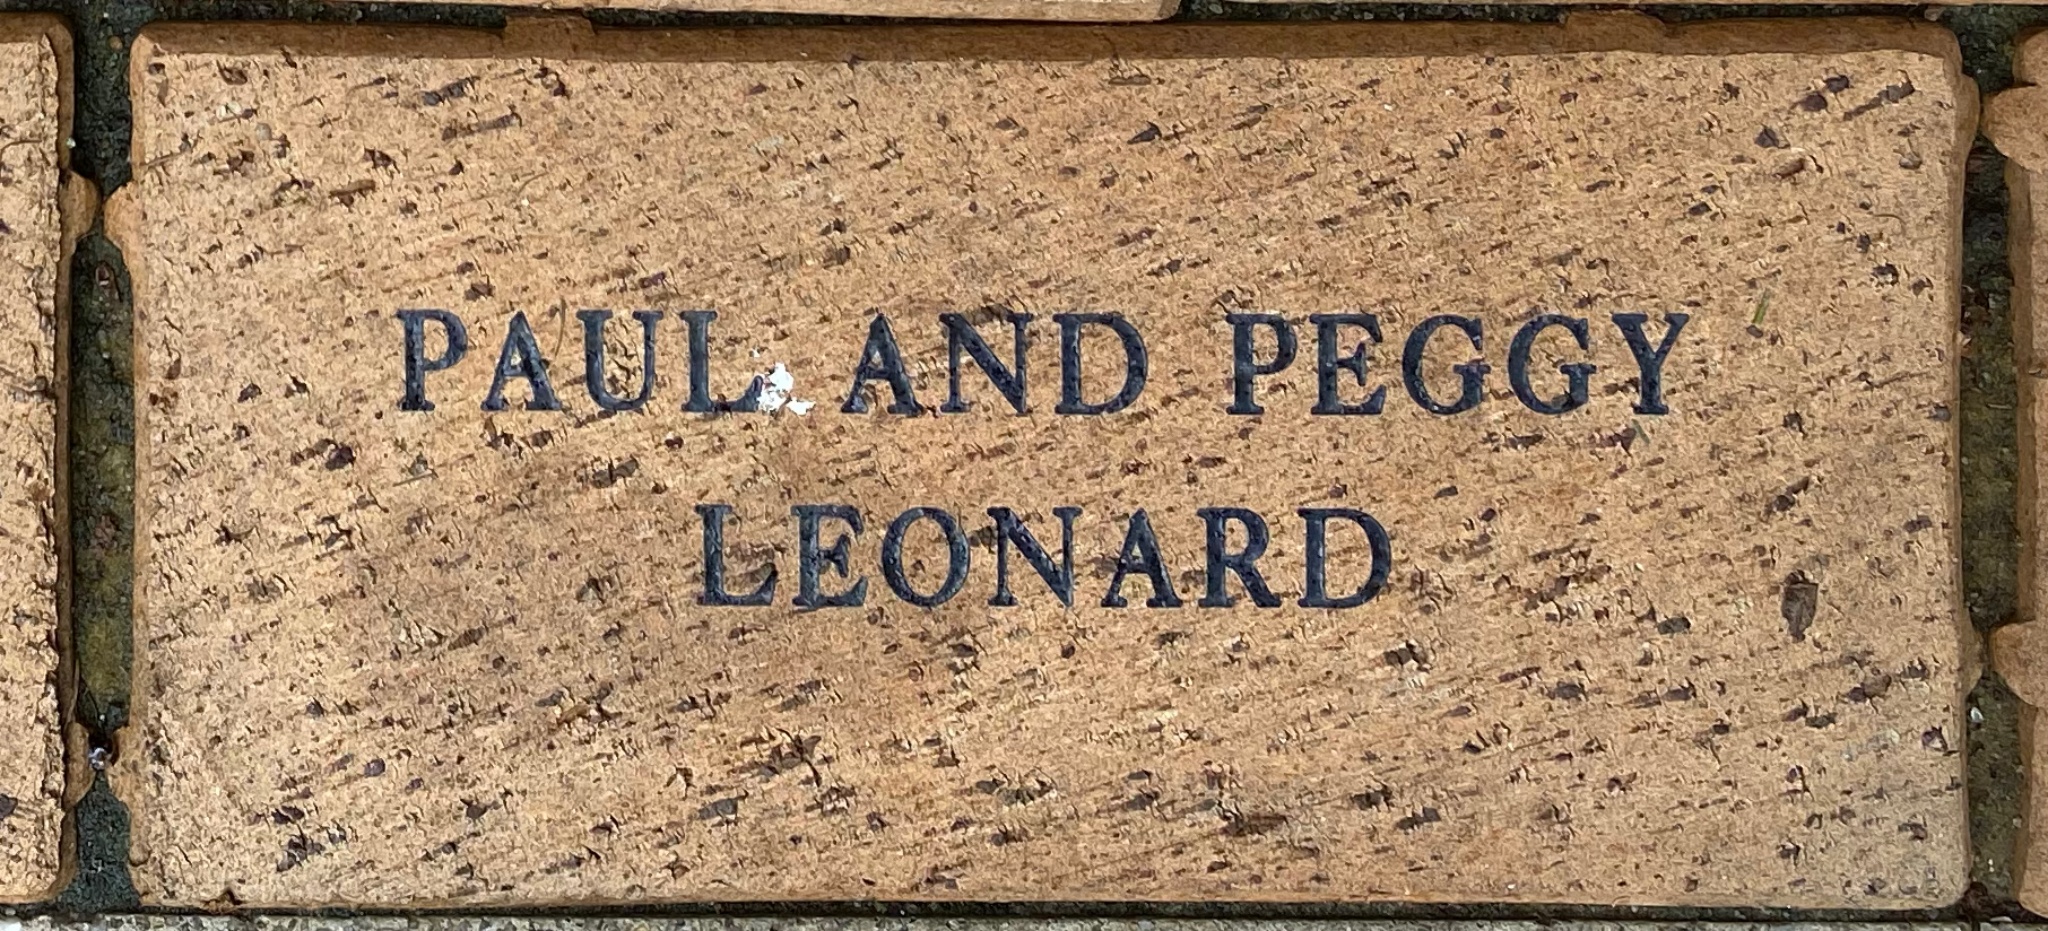 PAUL AND PEGGY  LEONARD